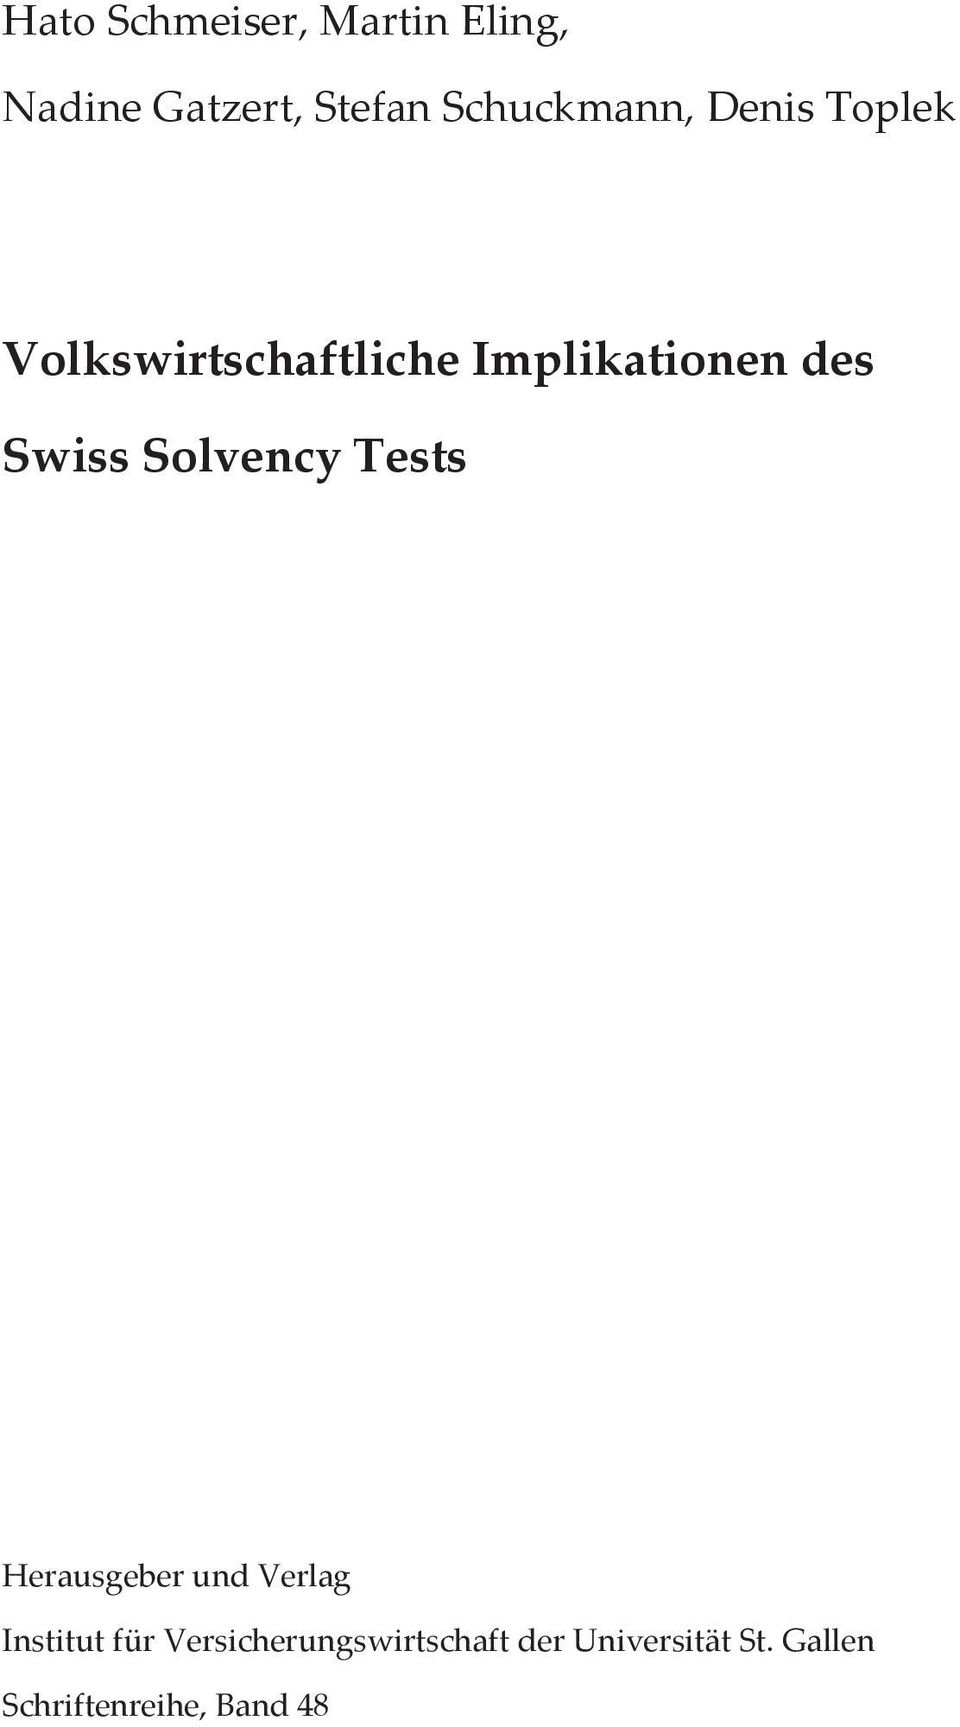 VolkswirtschaftlicheImplikationendes SwissSolvencyTests